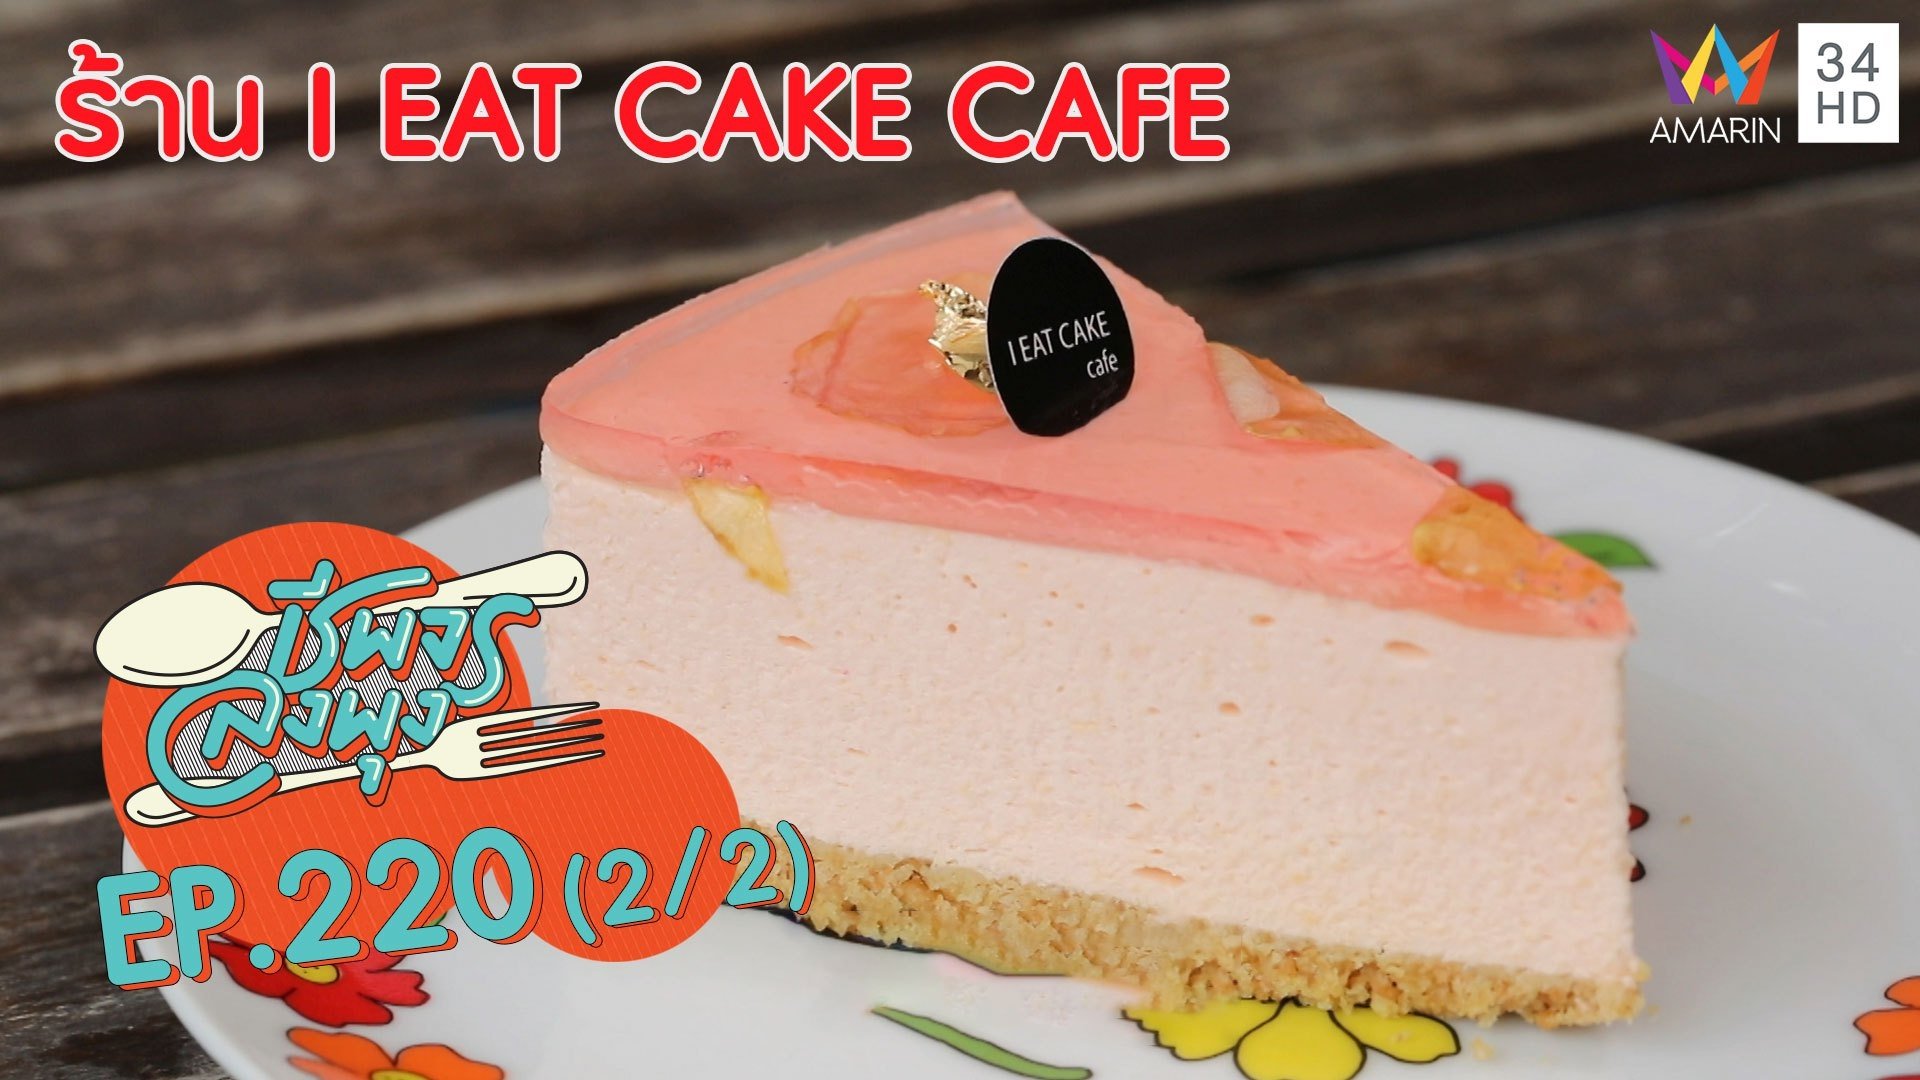 เต็มอิ่มกับสารพัดเมนูเค้กแสนอร่อย @ 'ร้าน I EAT CAKE CAFE'  | ชีพจรลงพุง | 2 พ.ค. 63 (2/2) | AMARIN TVHD34